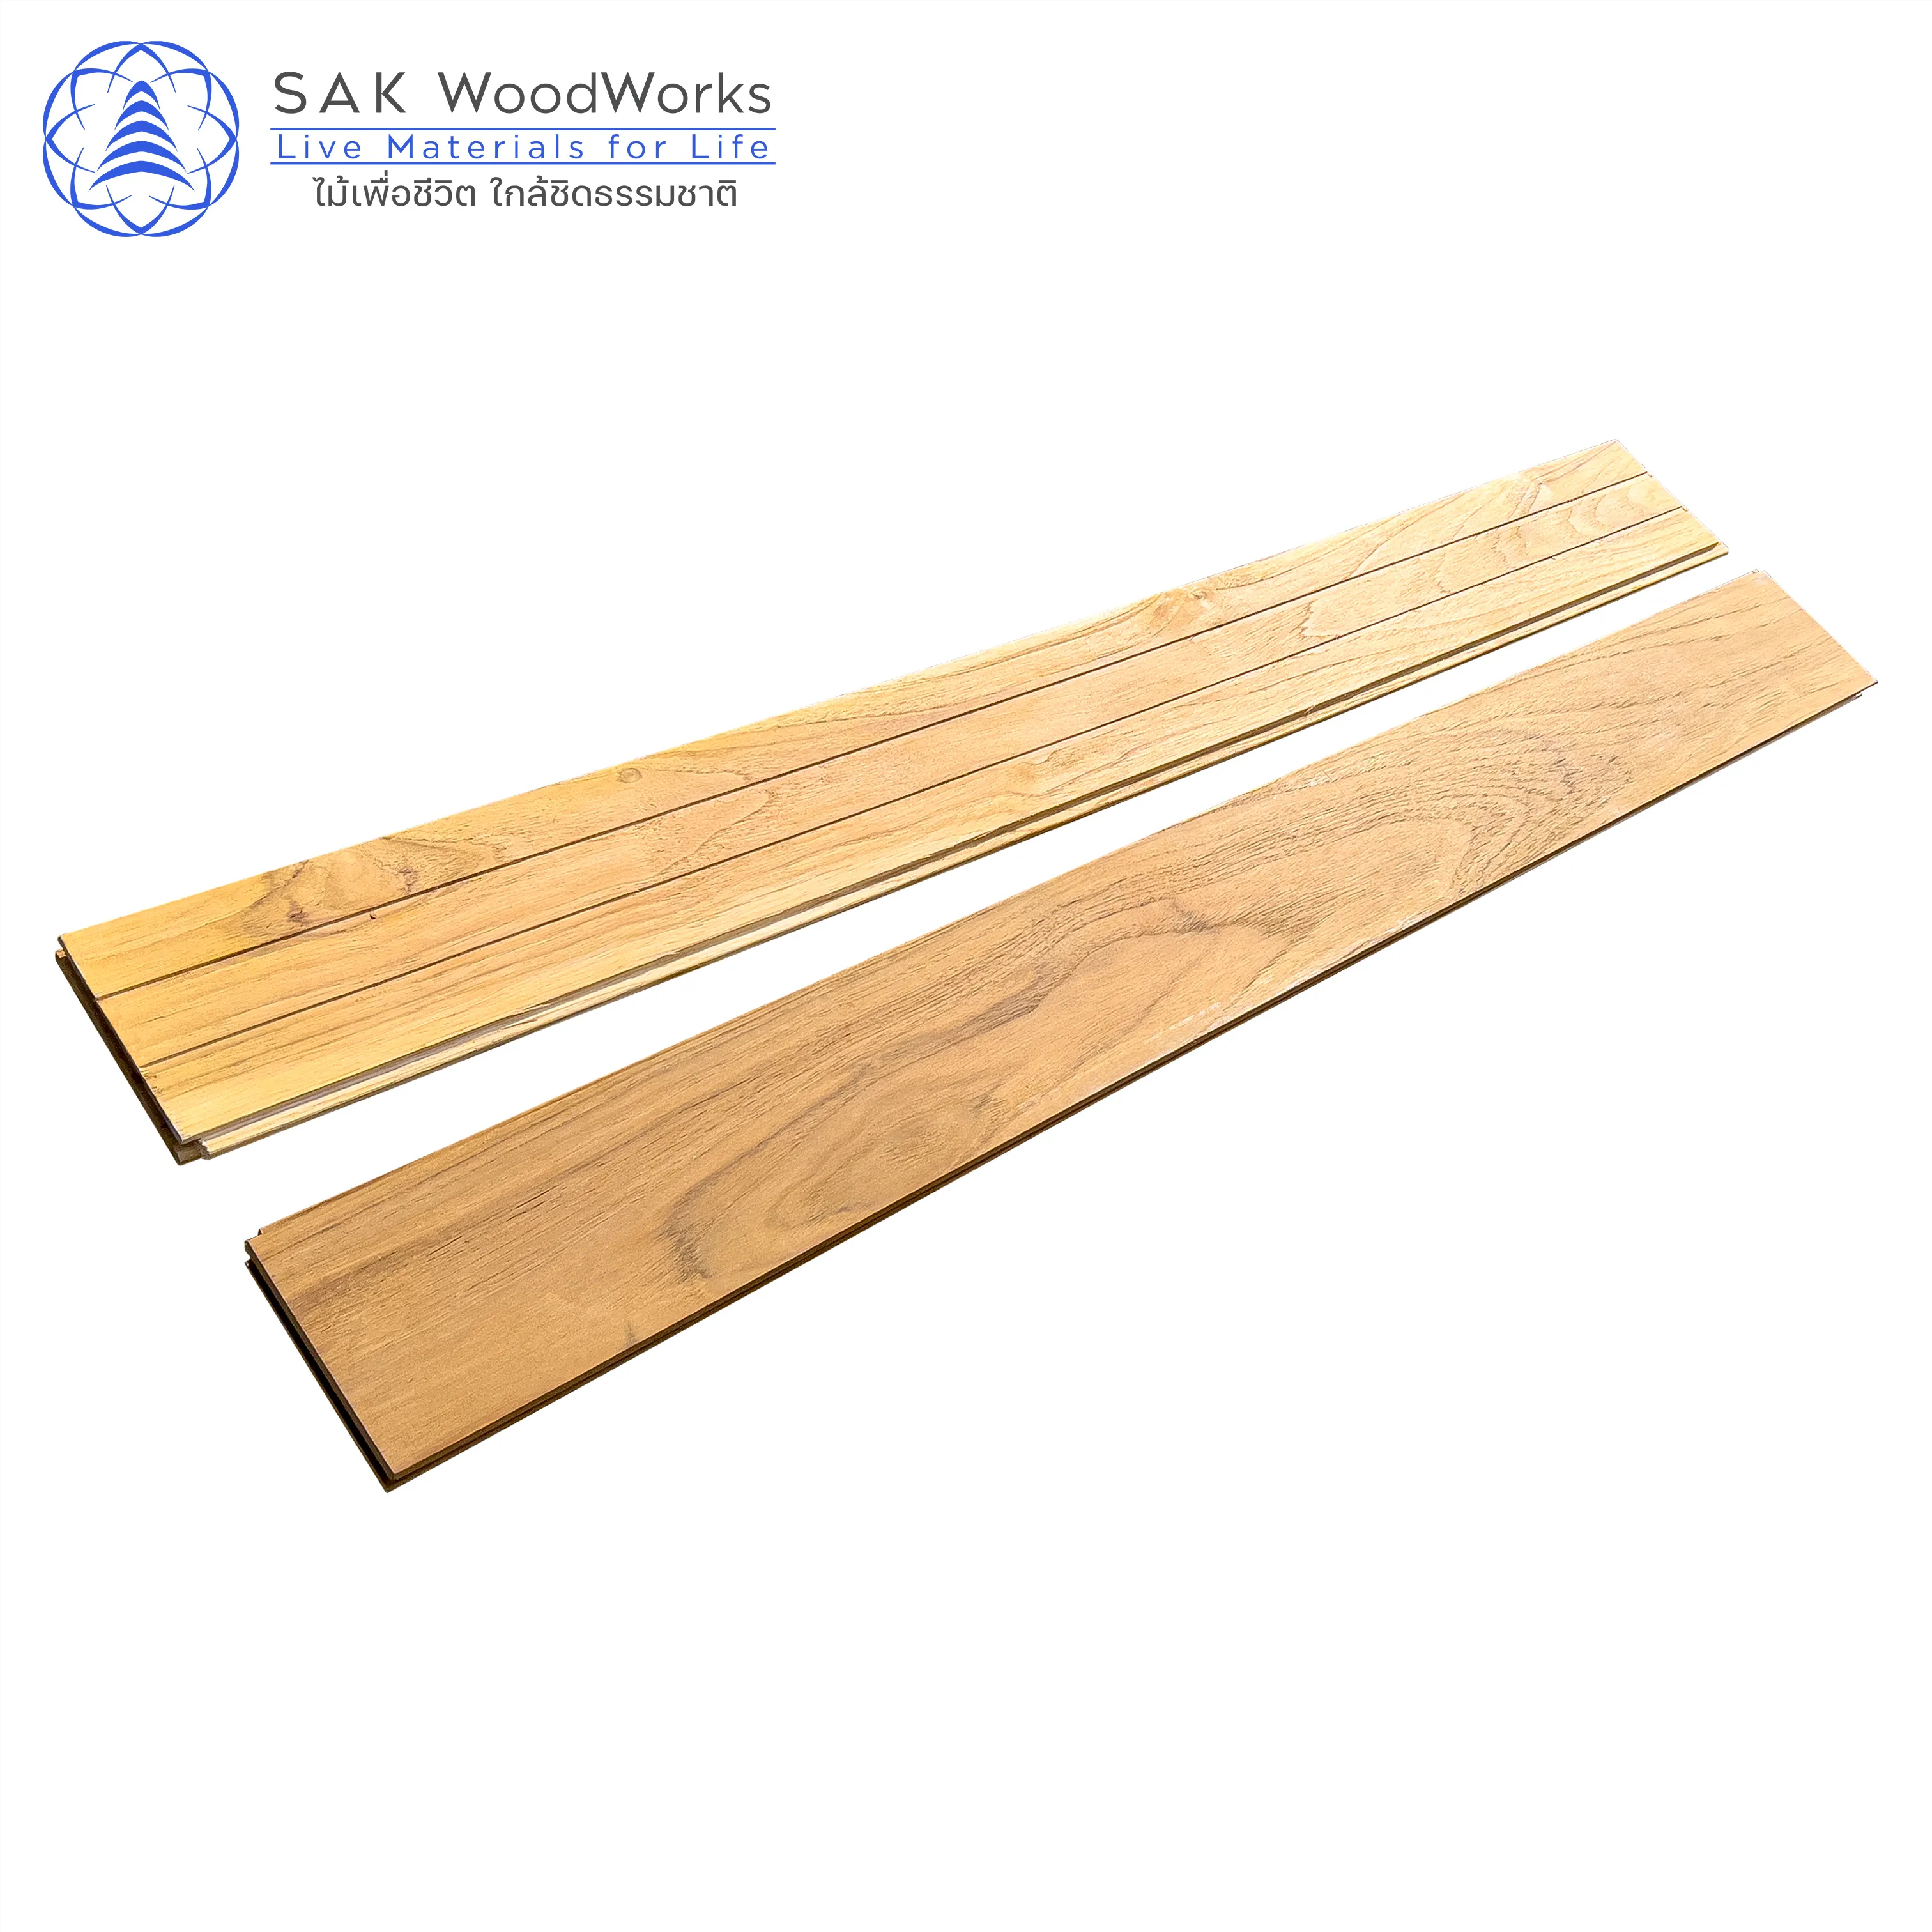 Thai Teak Parquet Boards by SAK WoodWorks Luxurious Indoor Wood Parquet Flooring with FSC Certified 15 x 90 x 600 mm.